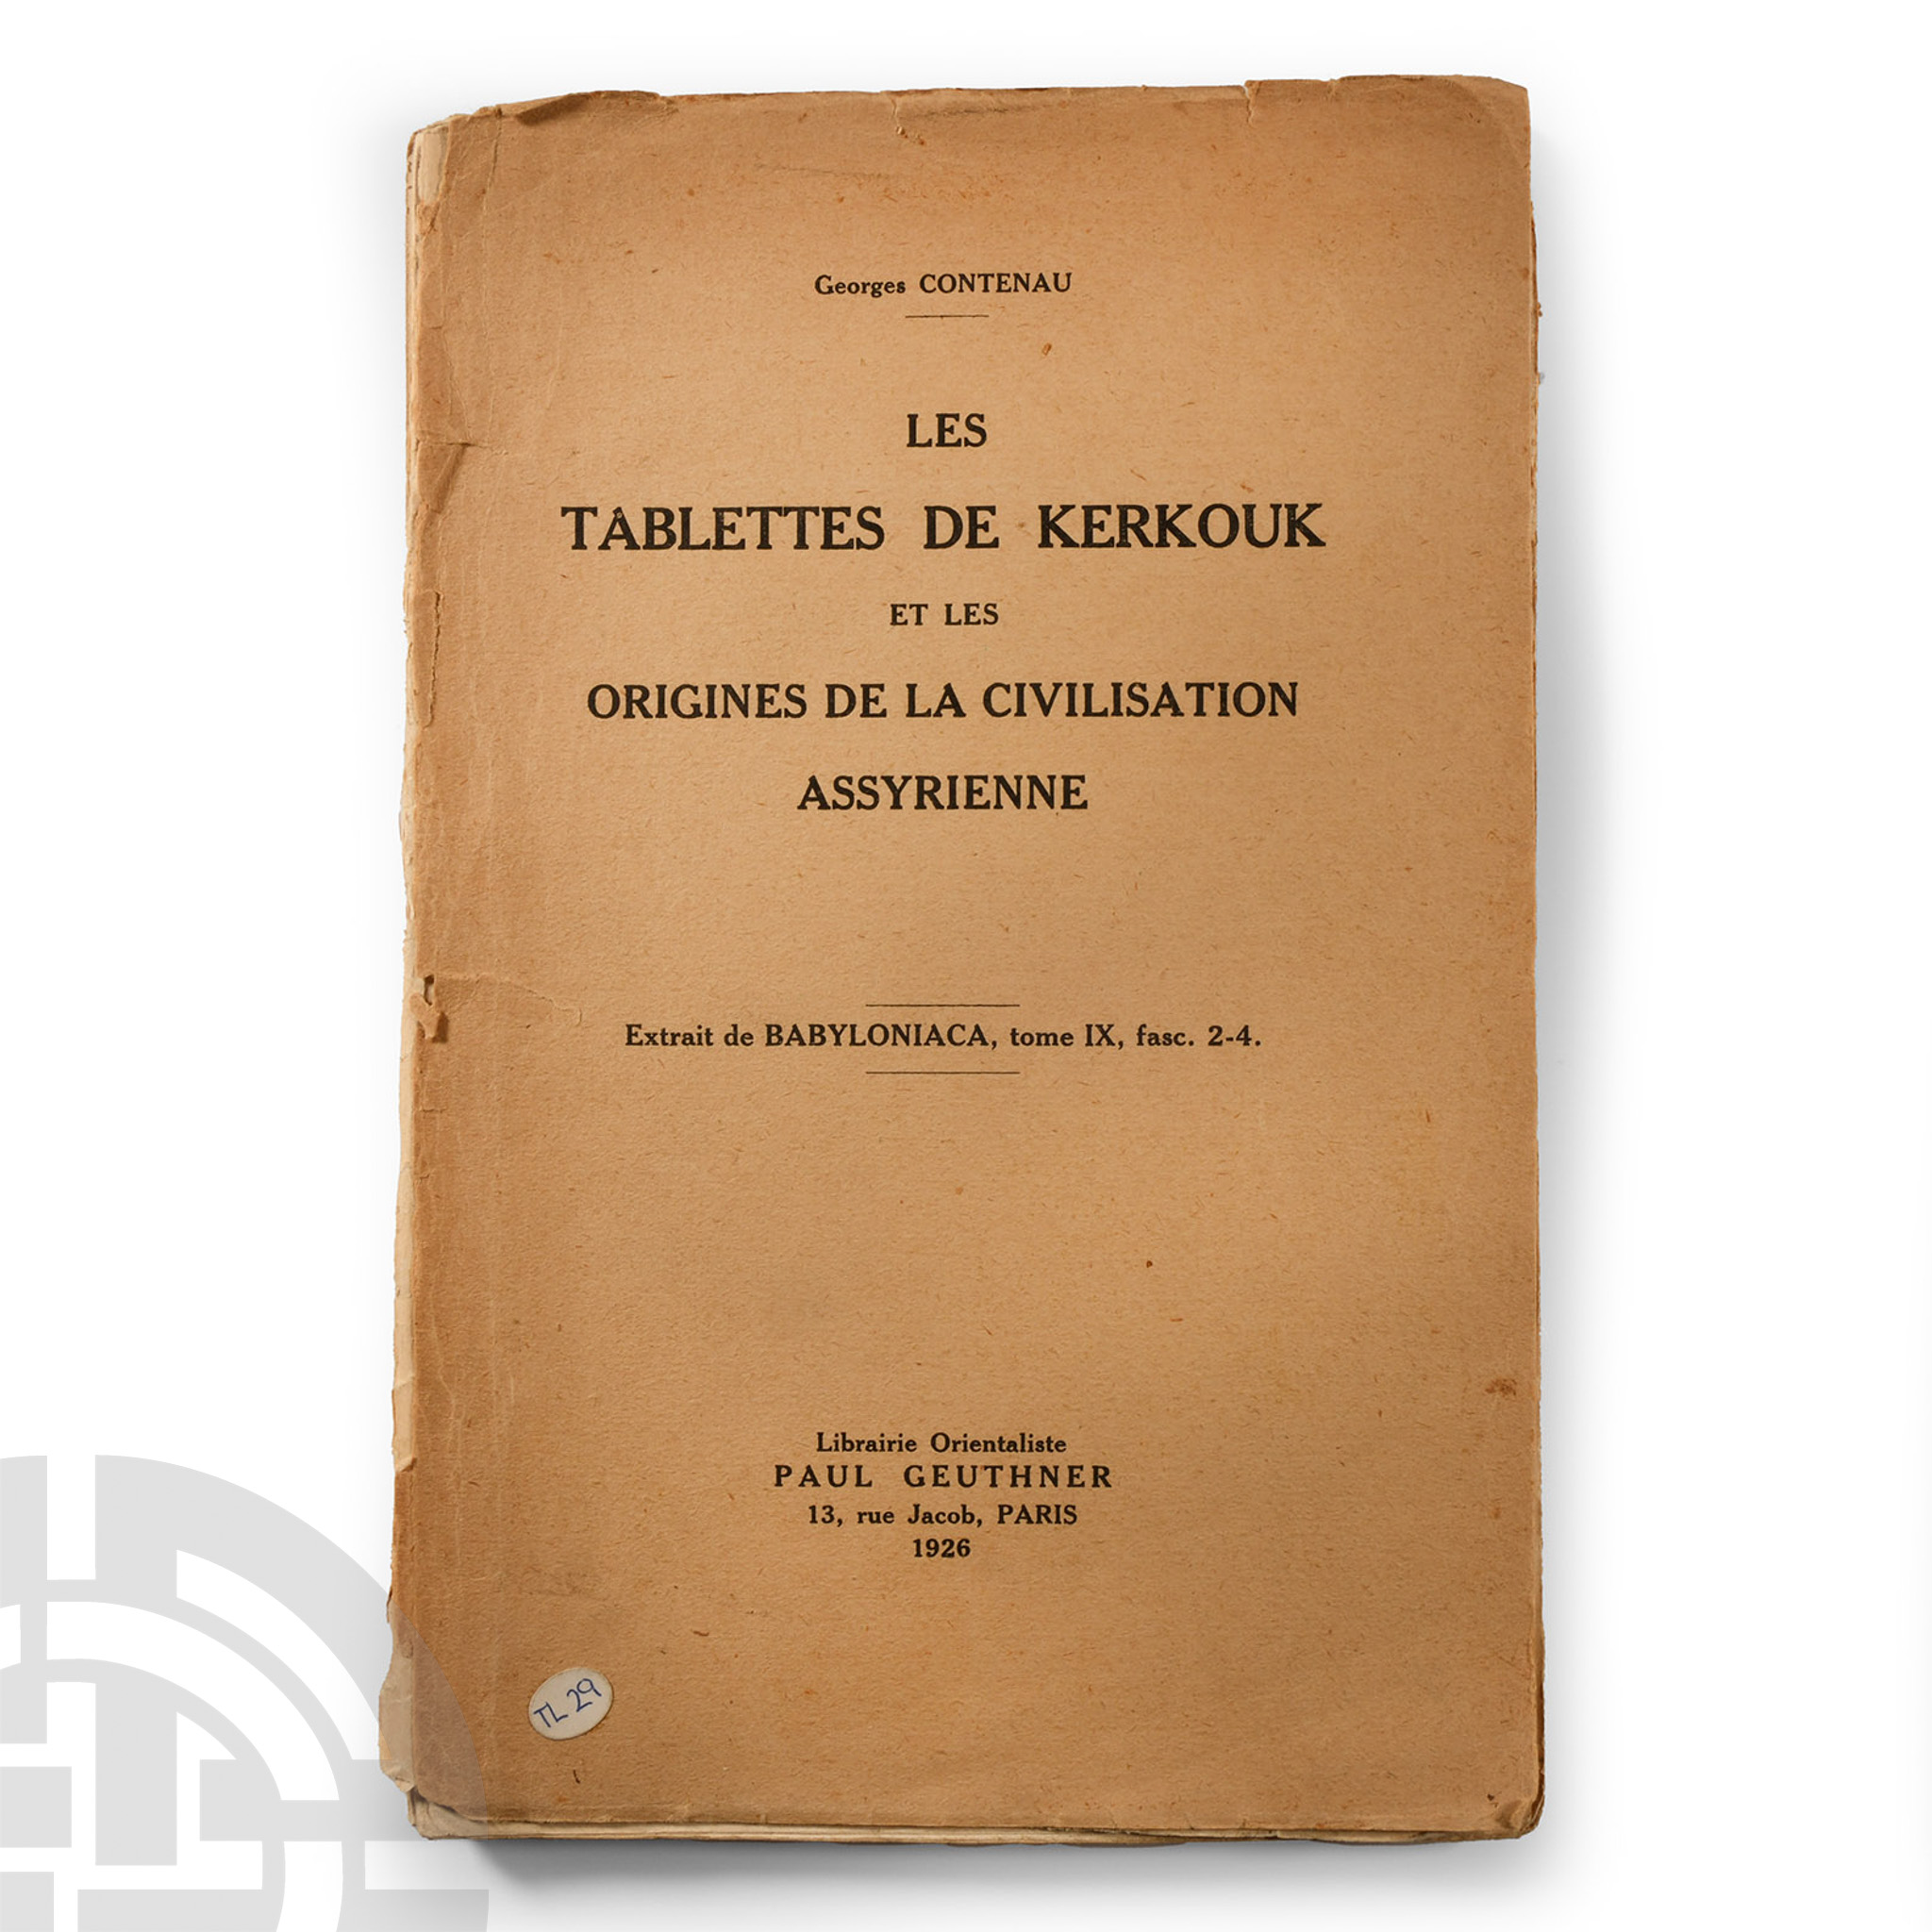 Archaeological Books - Les Tablettes de Kerkouk et les Origins de la Civilization Assyrienne